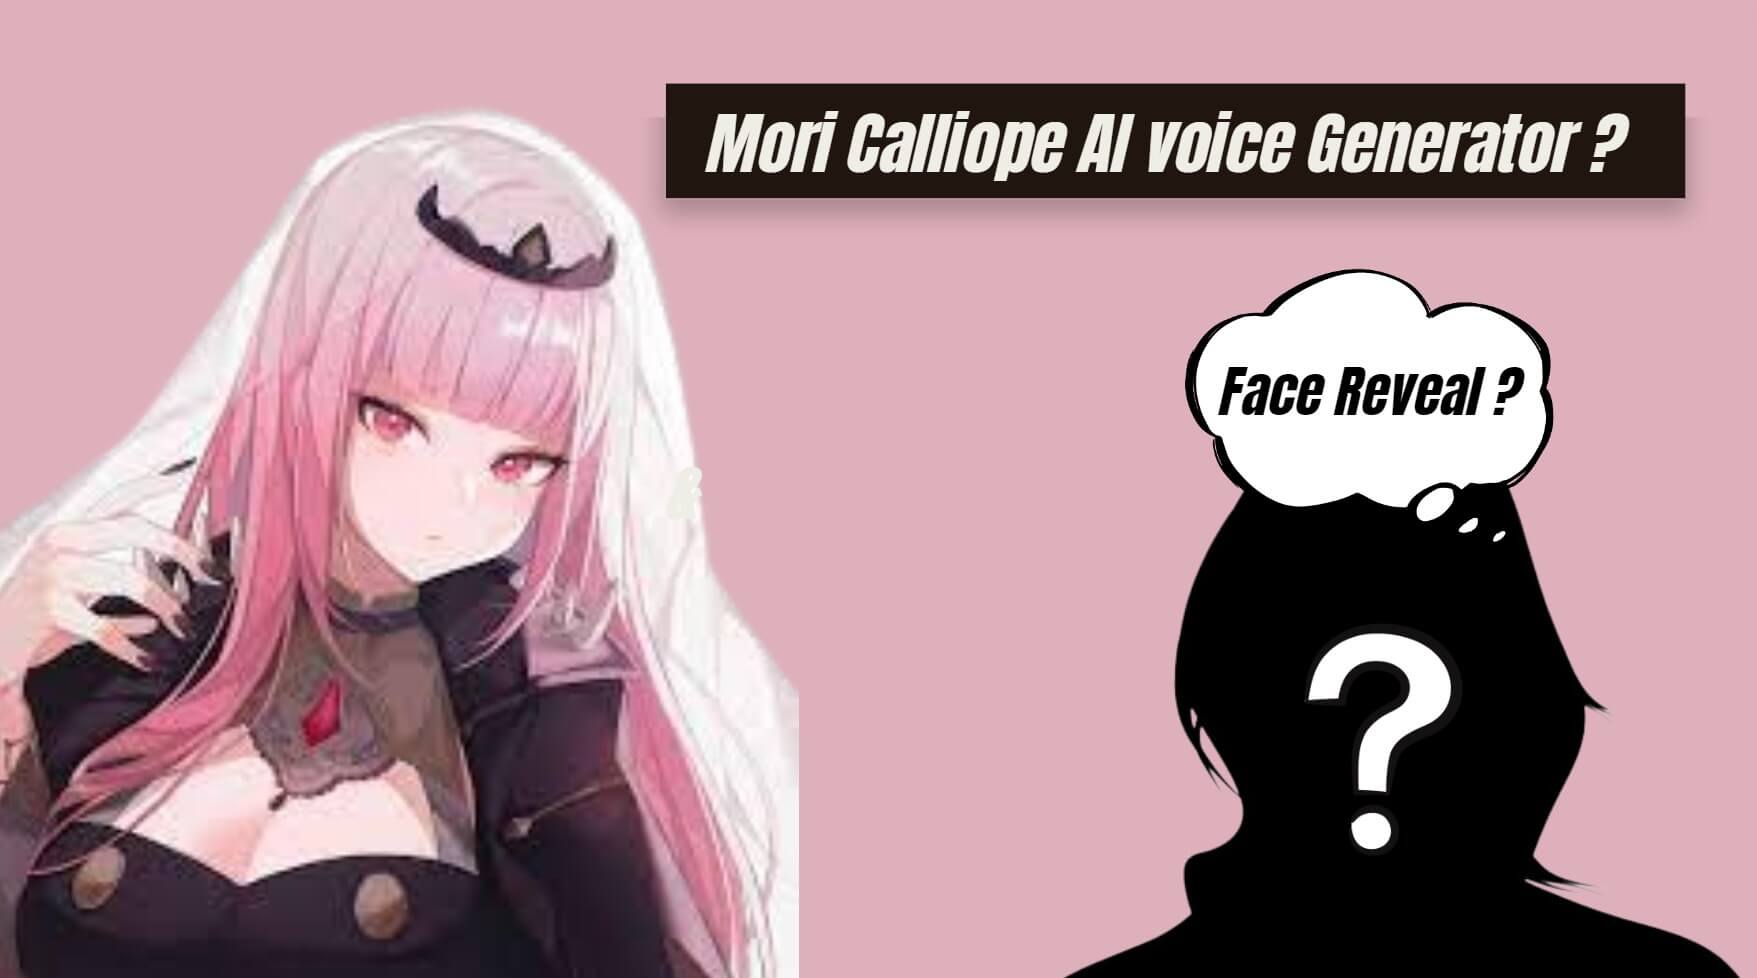 Mori Calliope AI voice